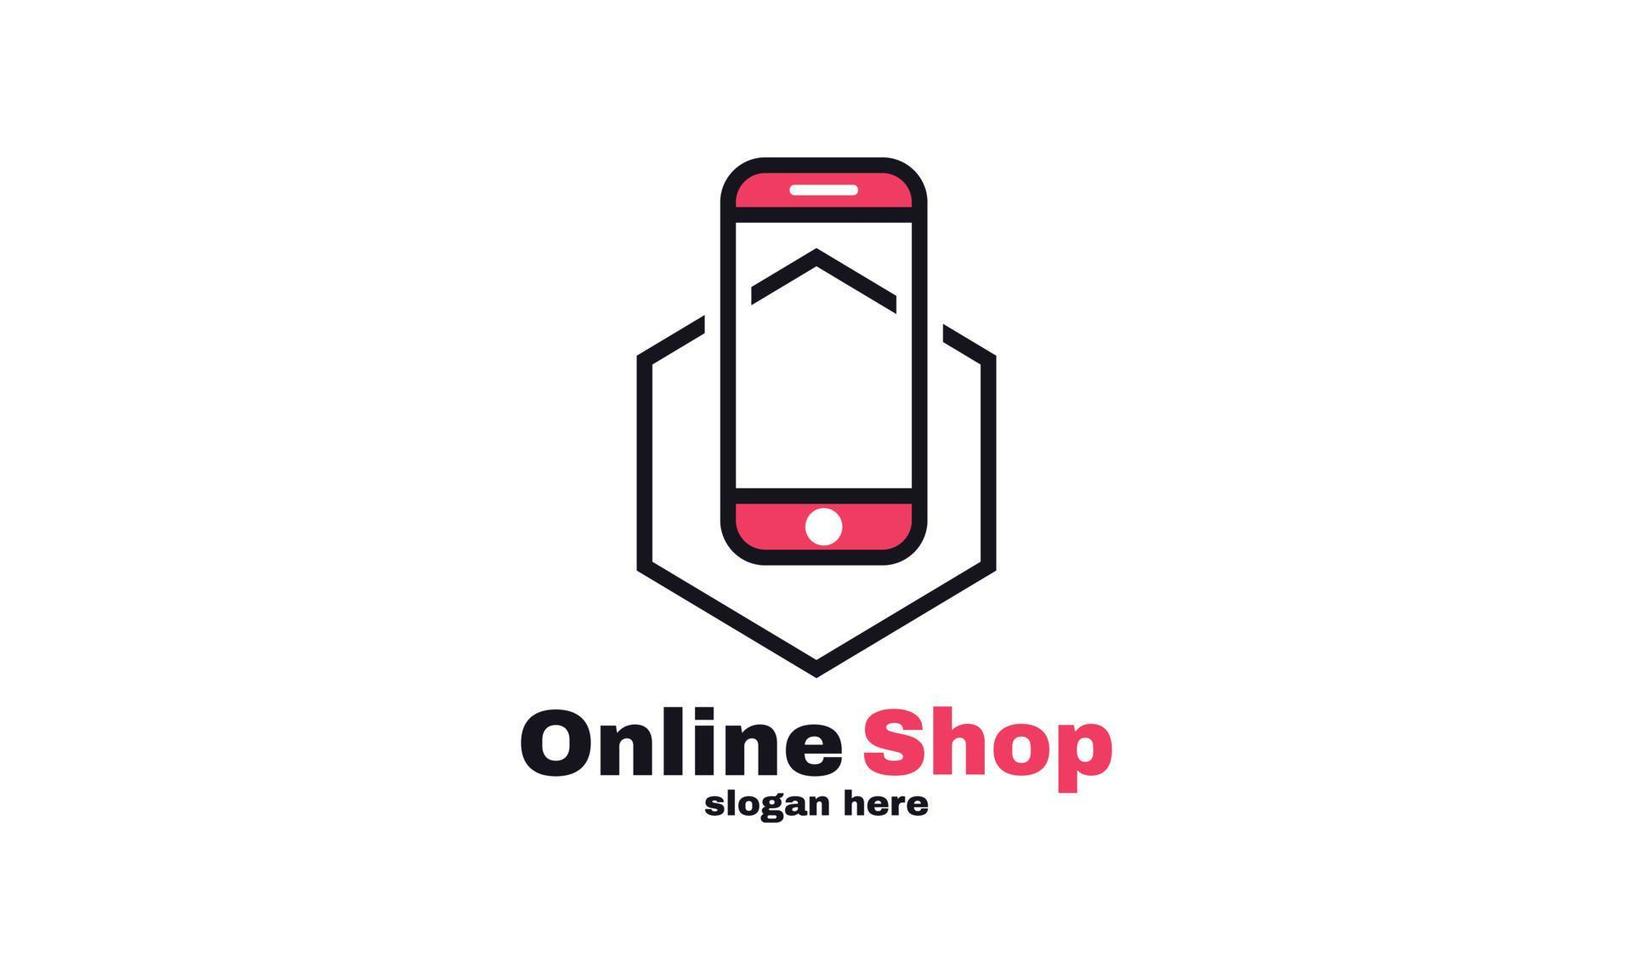 Lager Vektor abstraktes Online-Shop-Logo entwirft Vorlage Illustration Vektorgrafik des Smartphones